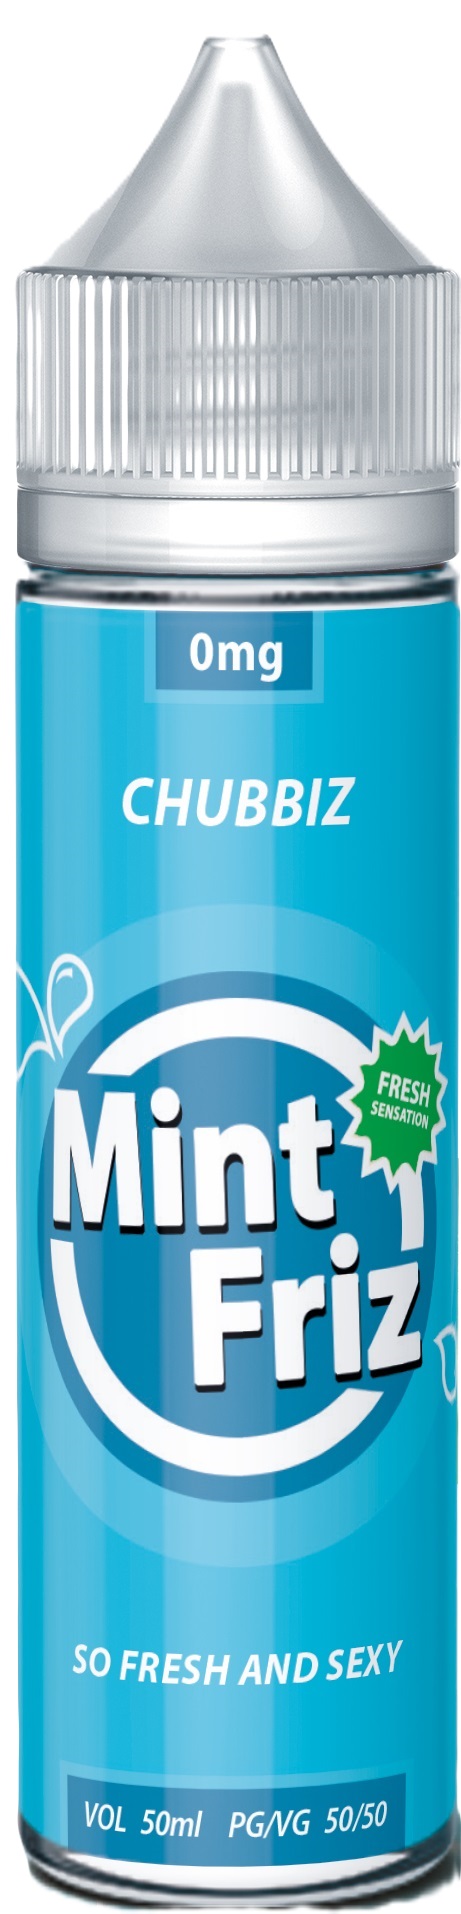 Mint-friz-Chubbiz-50ml